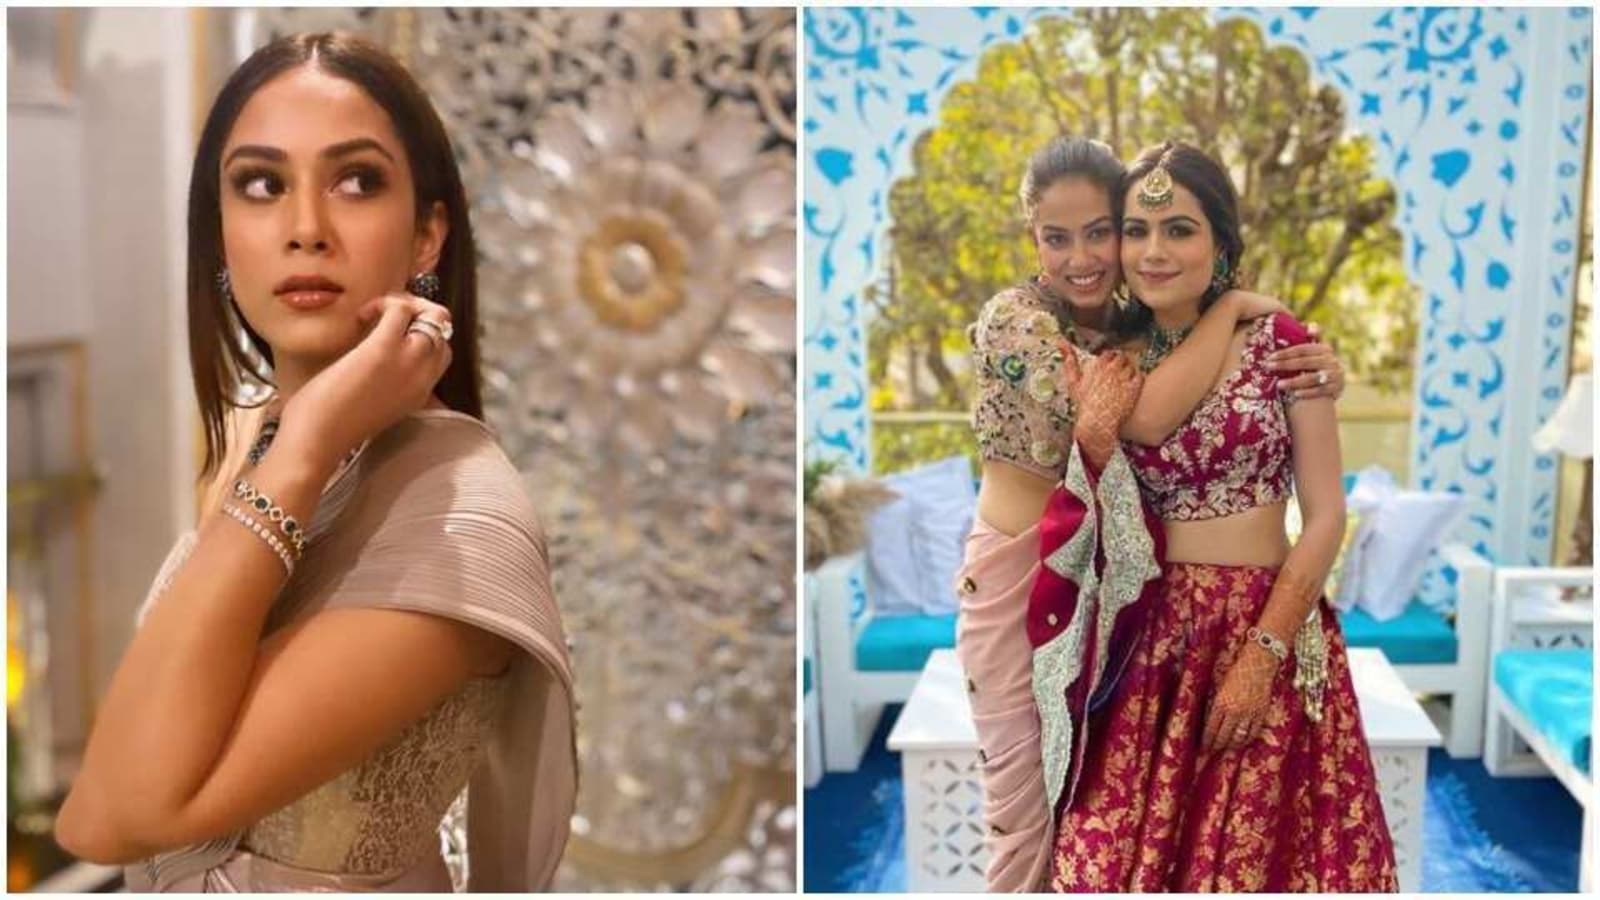 Mira Rajput looks stunning as she attends friend's wedding, fans call ...